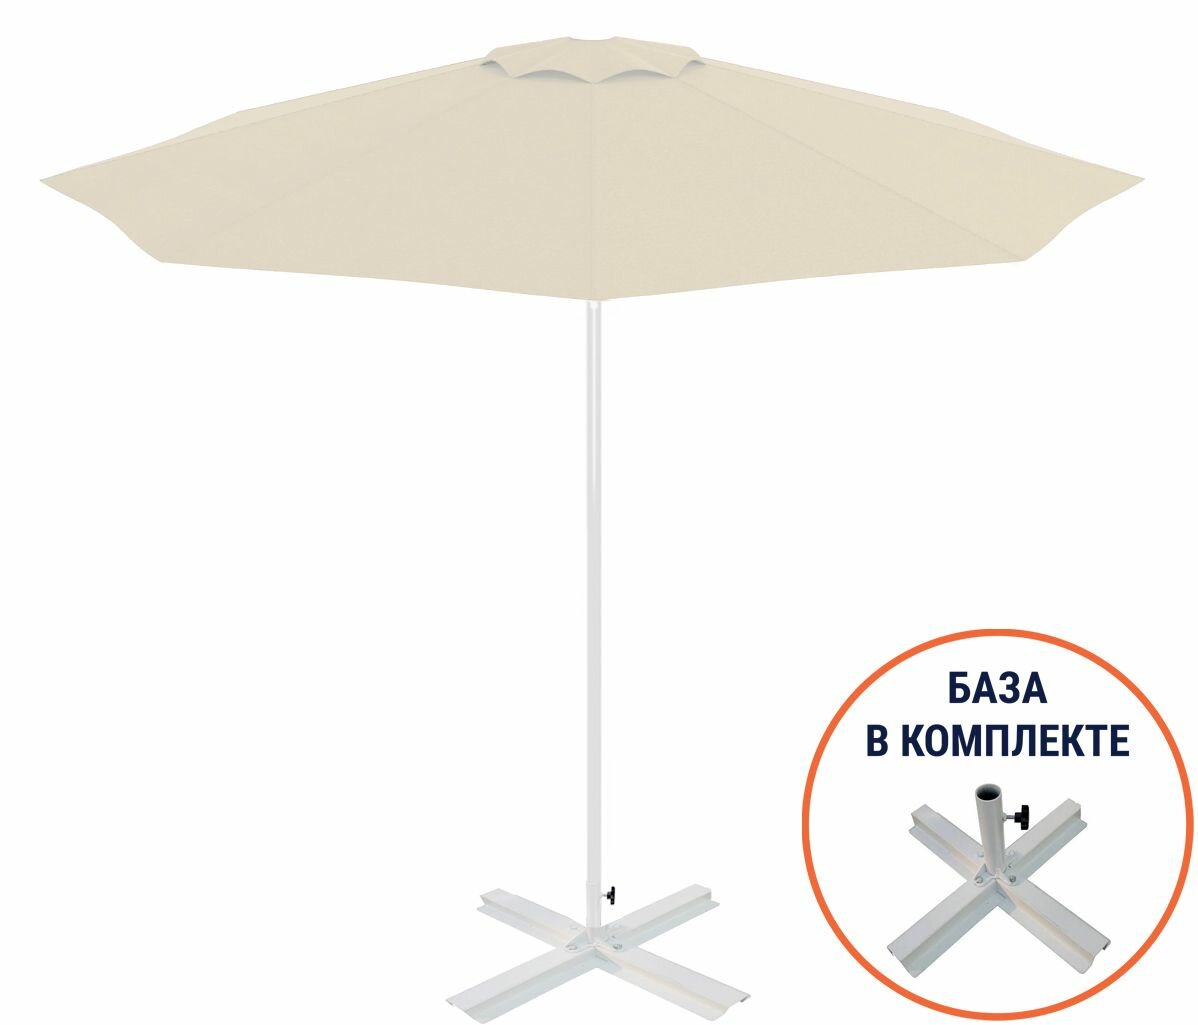 Большой садово-пляжный зонт со стационарной базой Kiwi, Ø200 см, , THEUMBRELA SEMSIYE EVI, цвета белый и бежевый